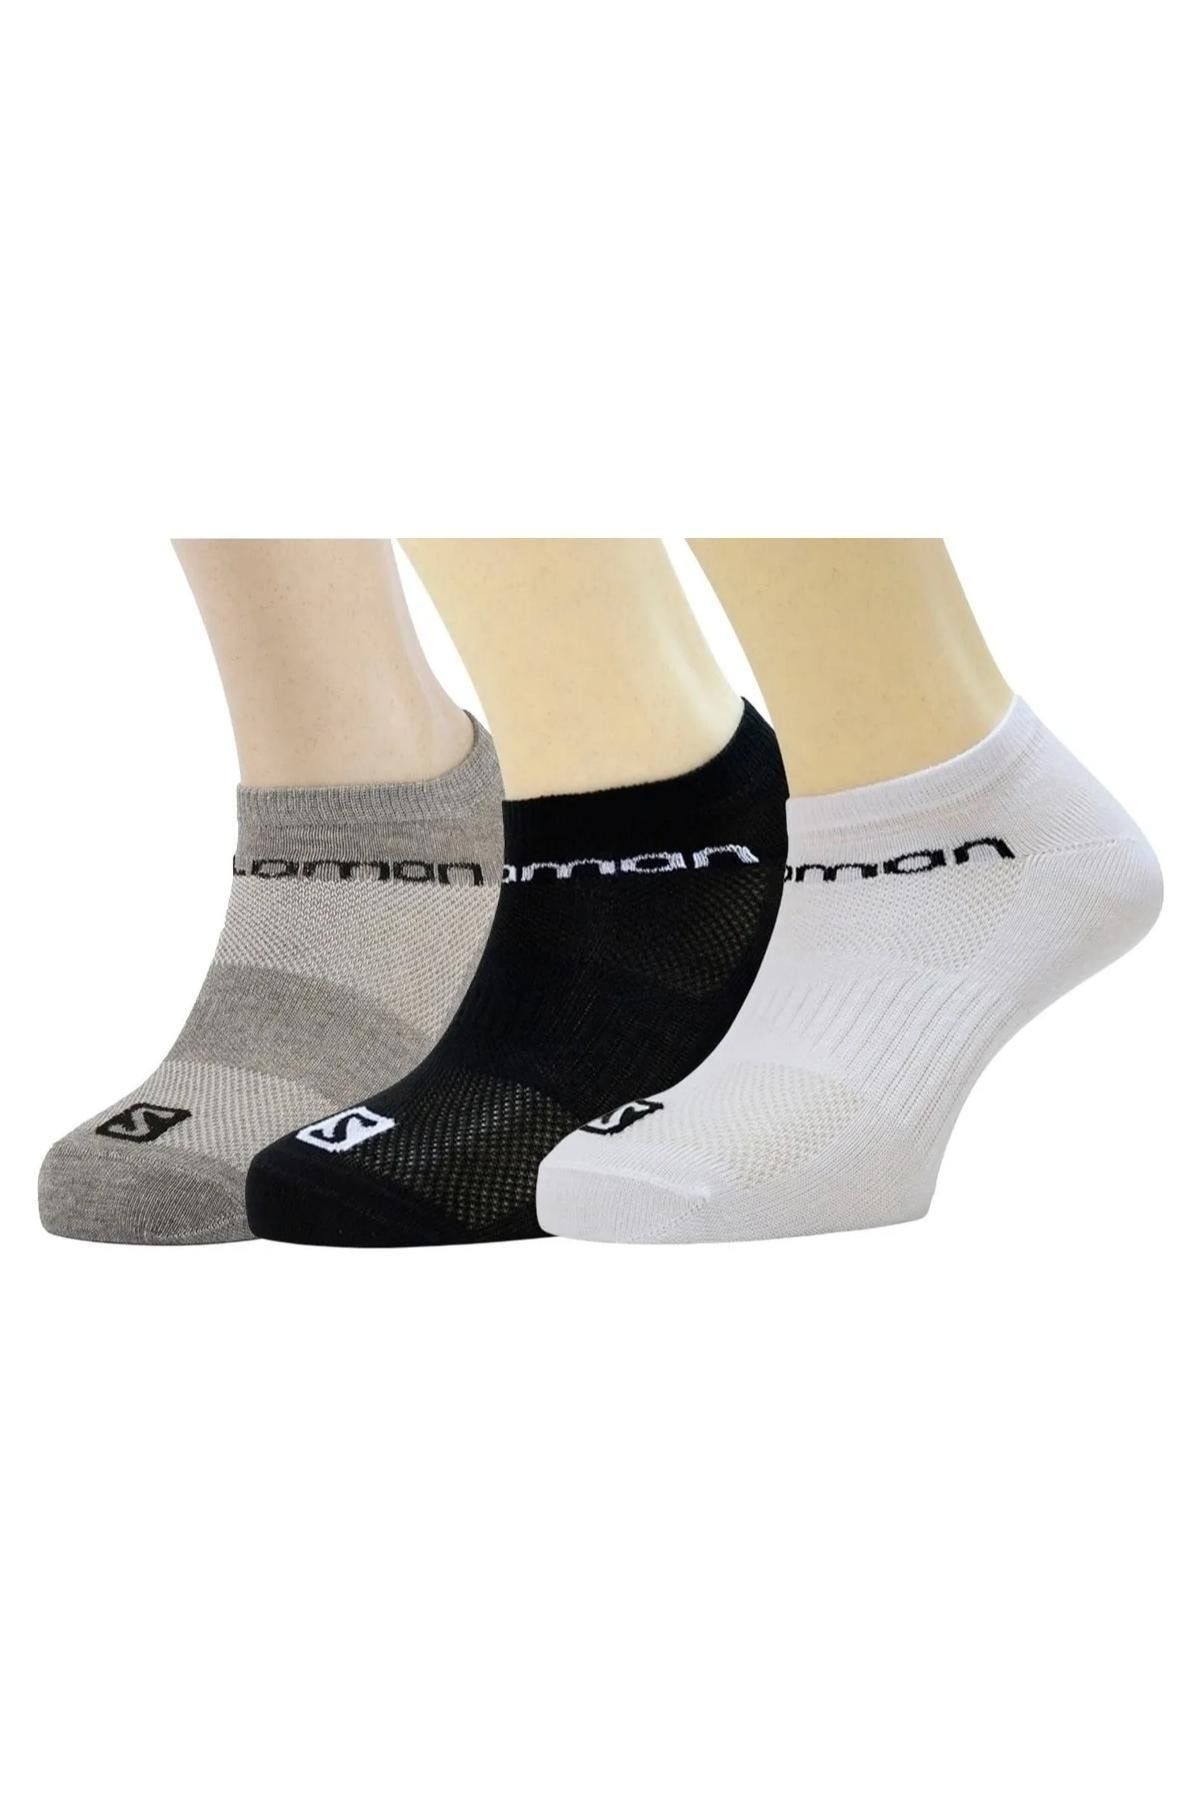 Salomon L36937500 Live Low 3 Pack Çorap Çok Renkli Unisex Çorap